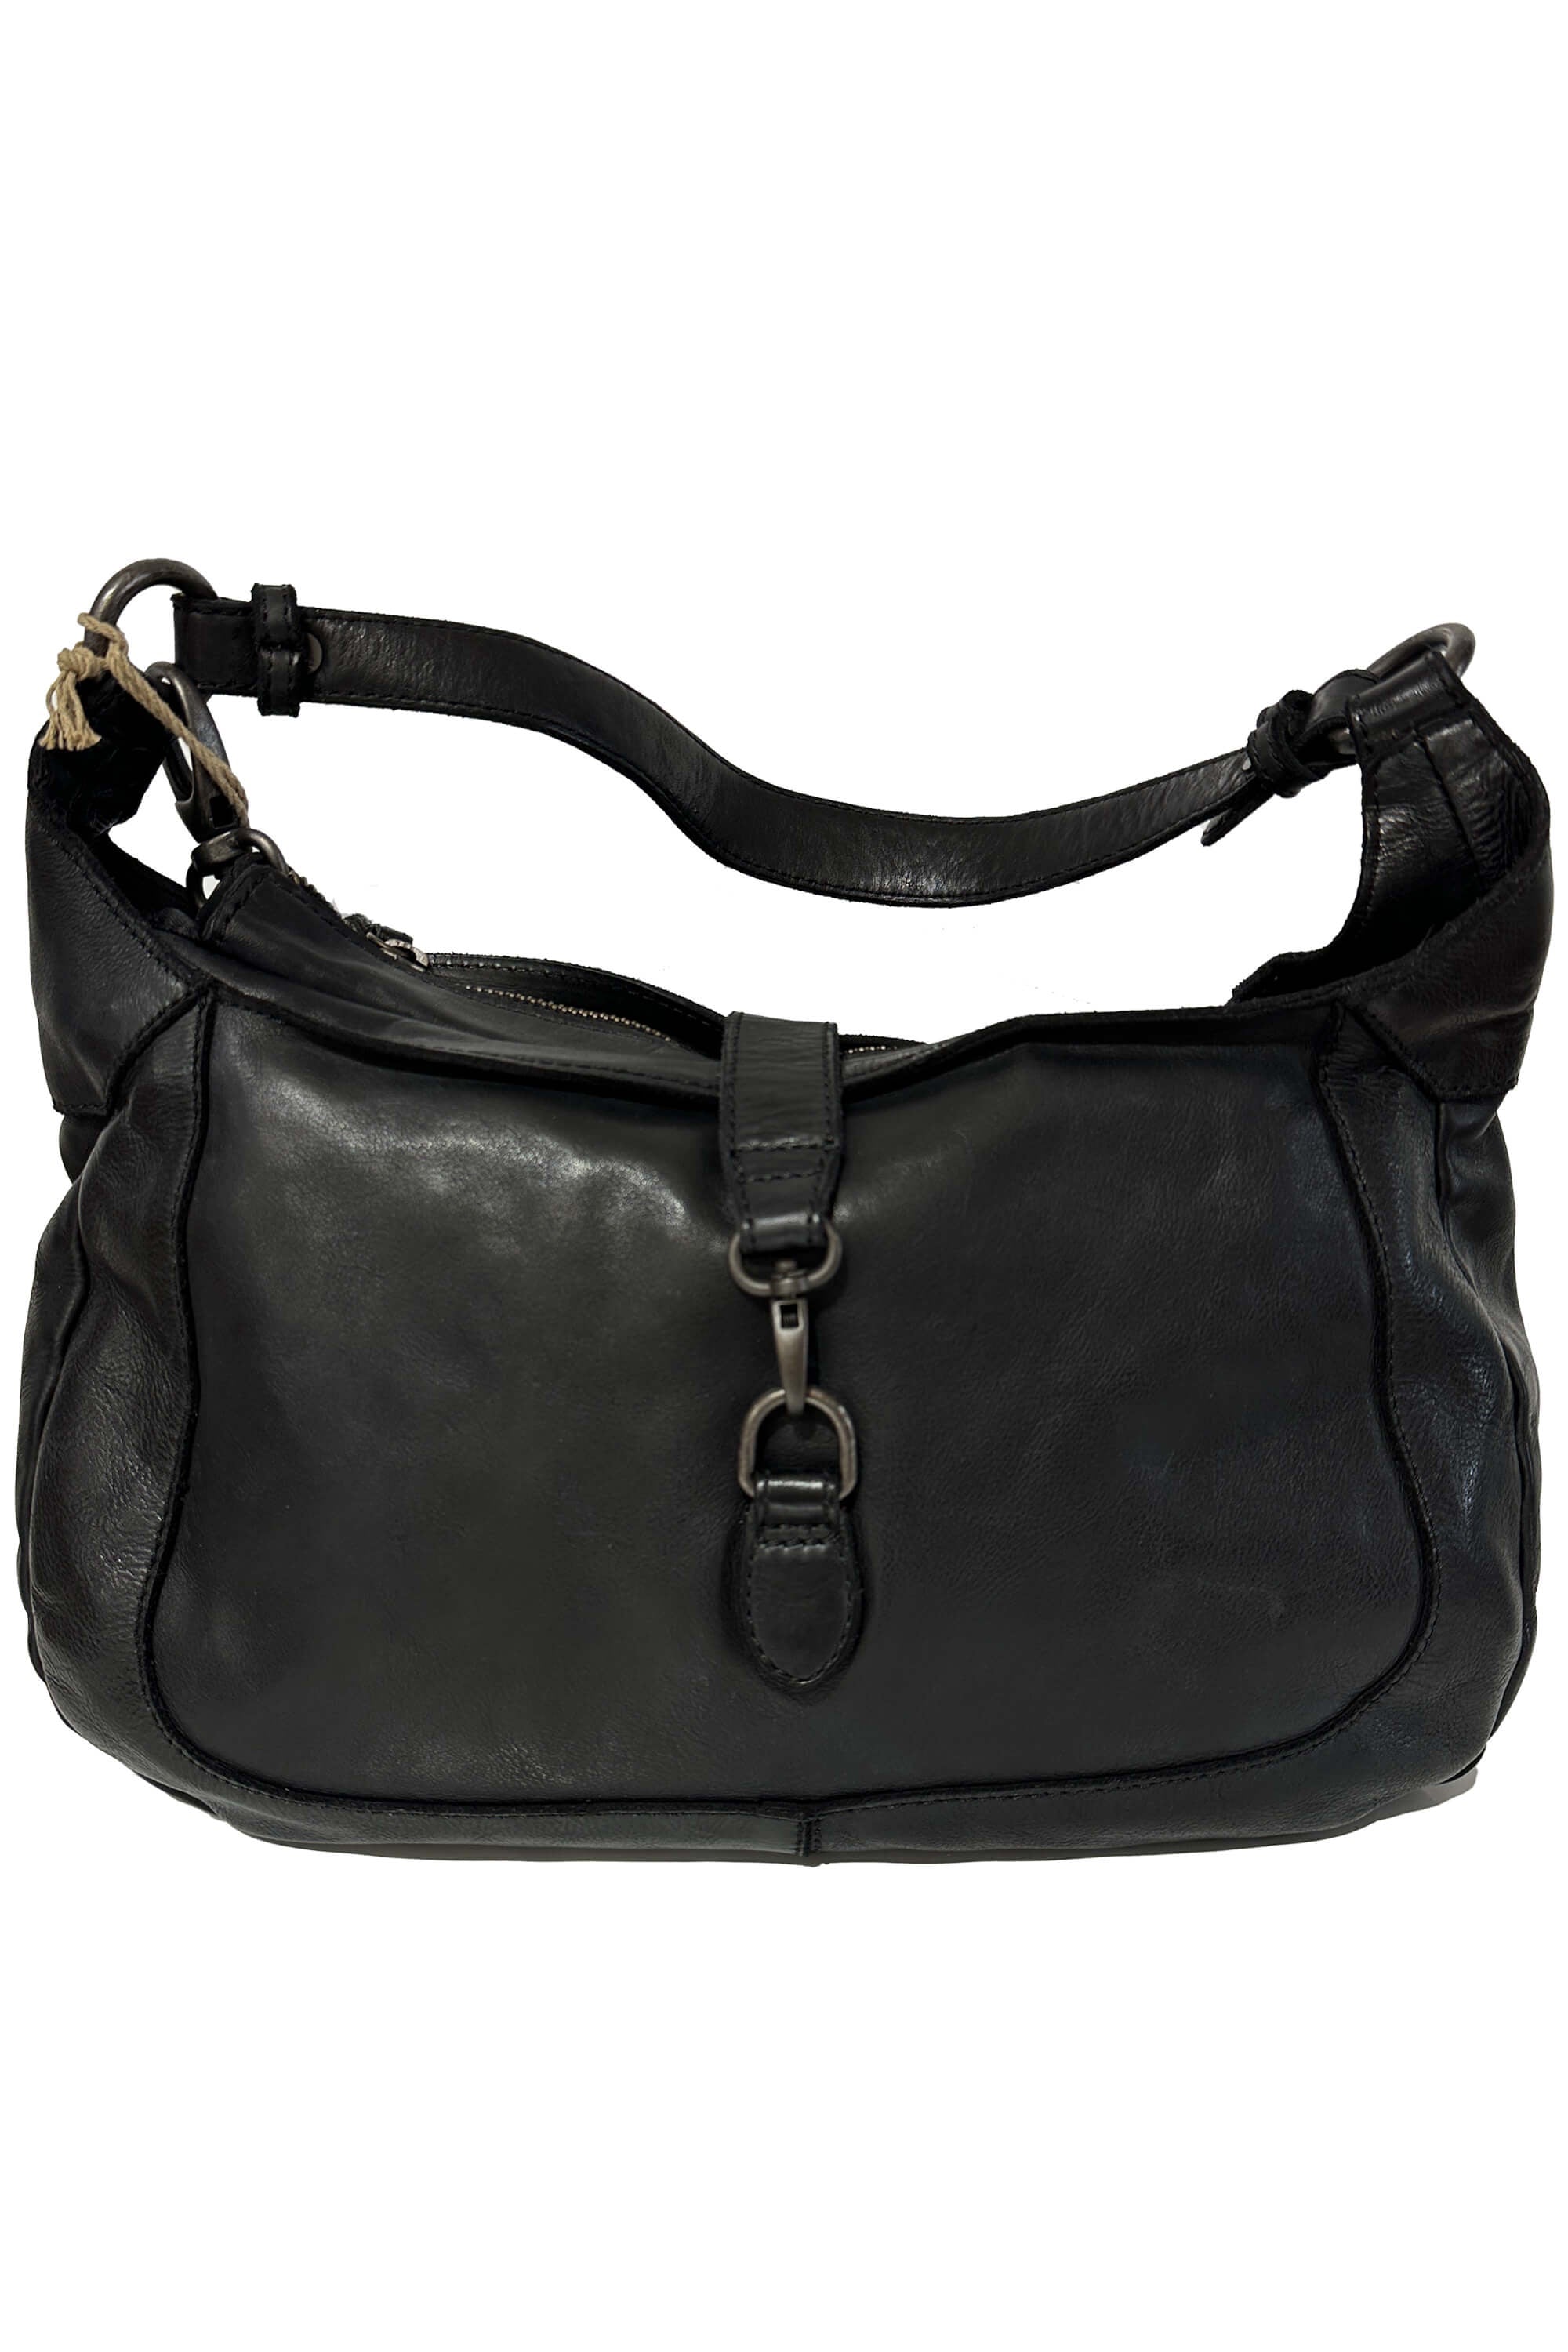 Gianni Conti 4203710 Black Bag